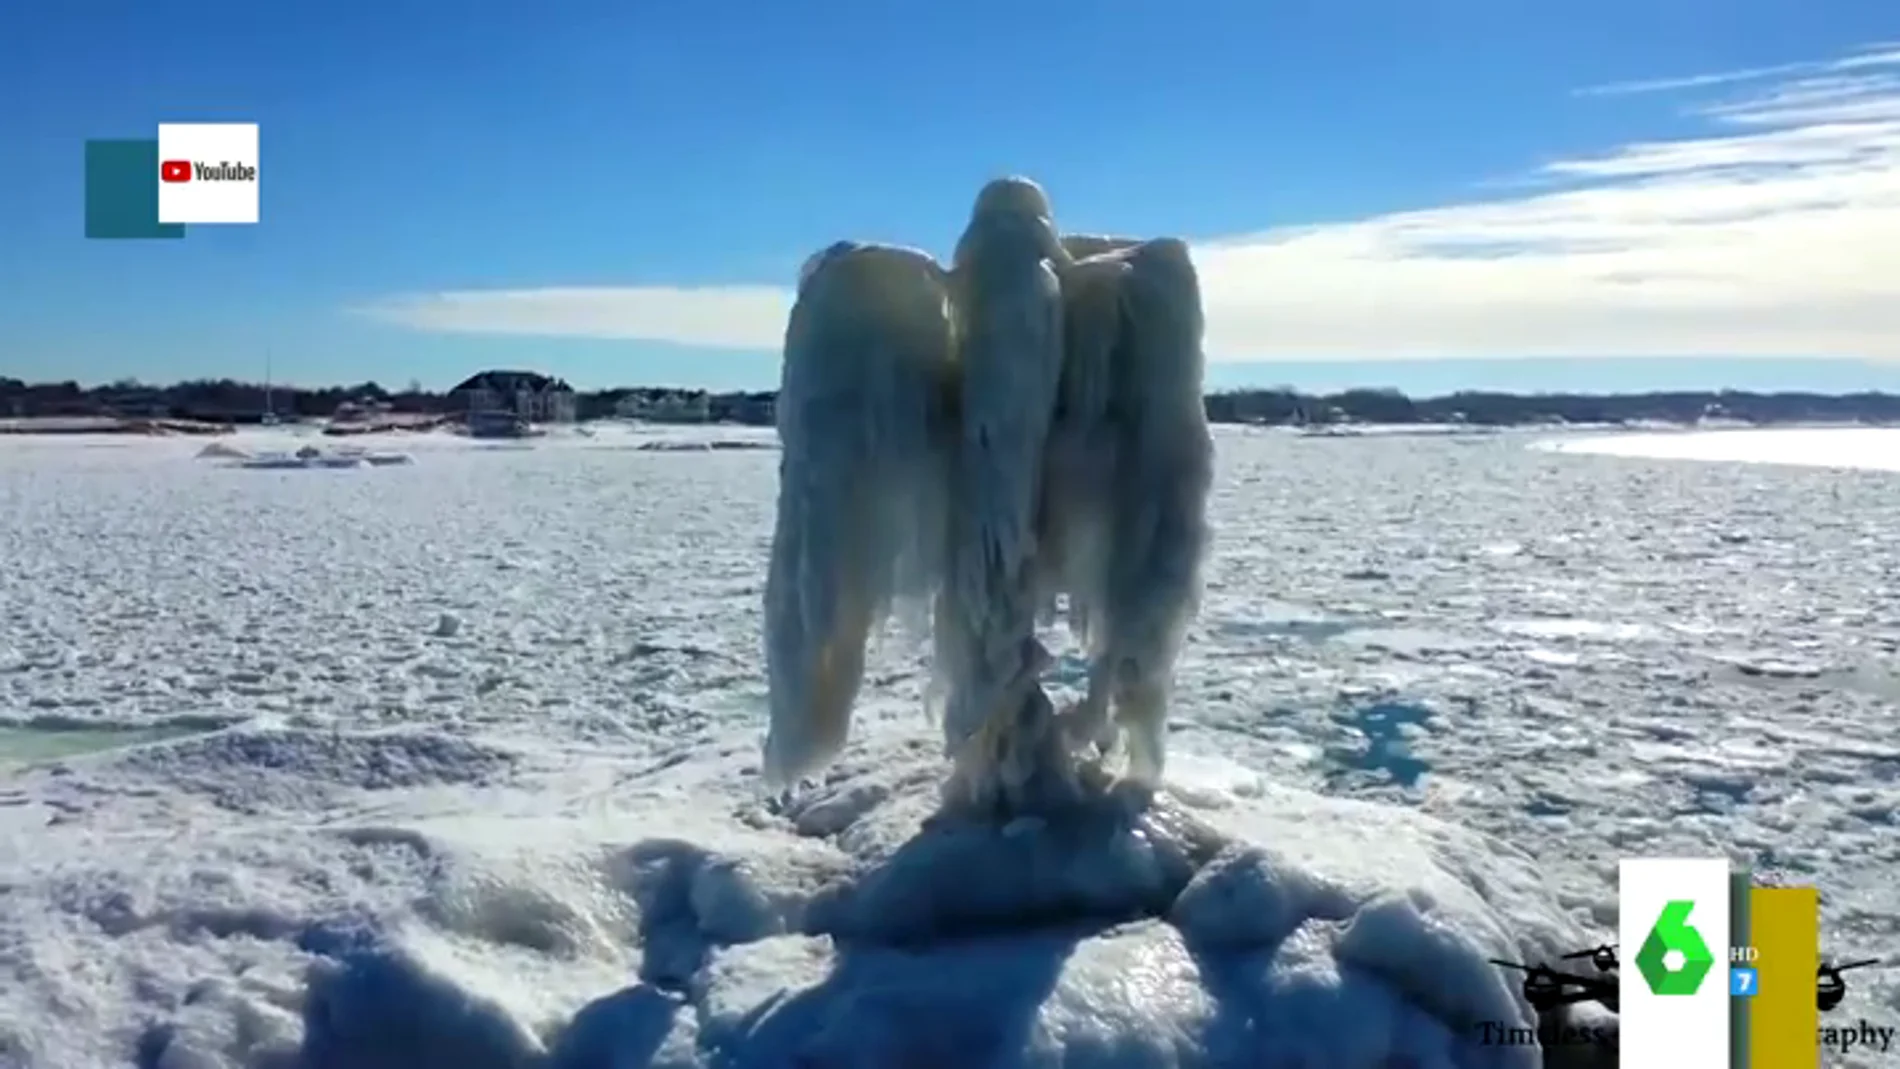 Una inquietante escultura de un ángel de hielo aparece en un lago de Michigan